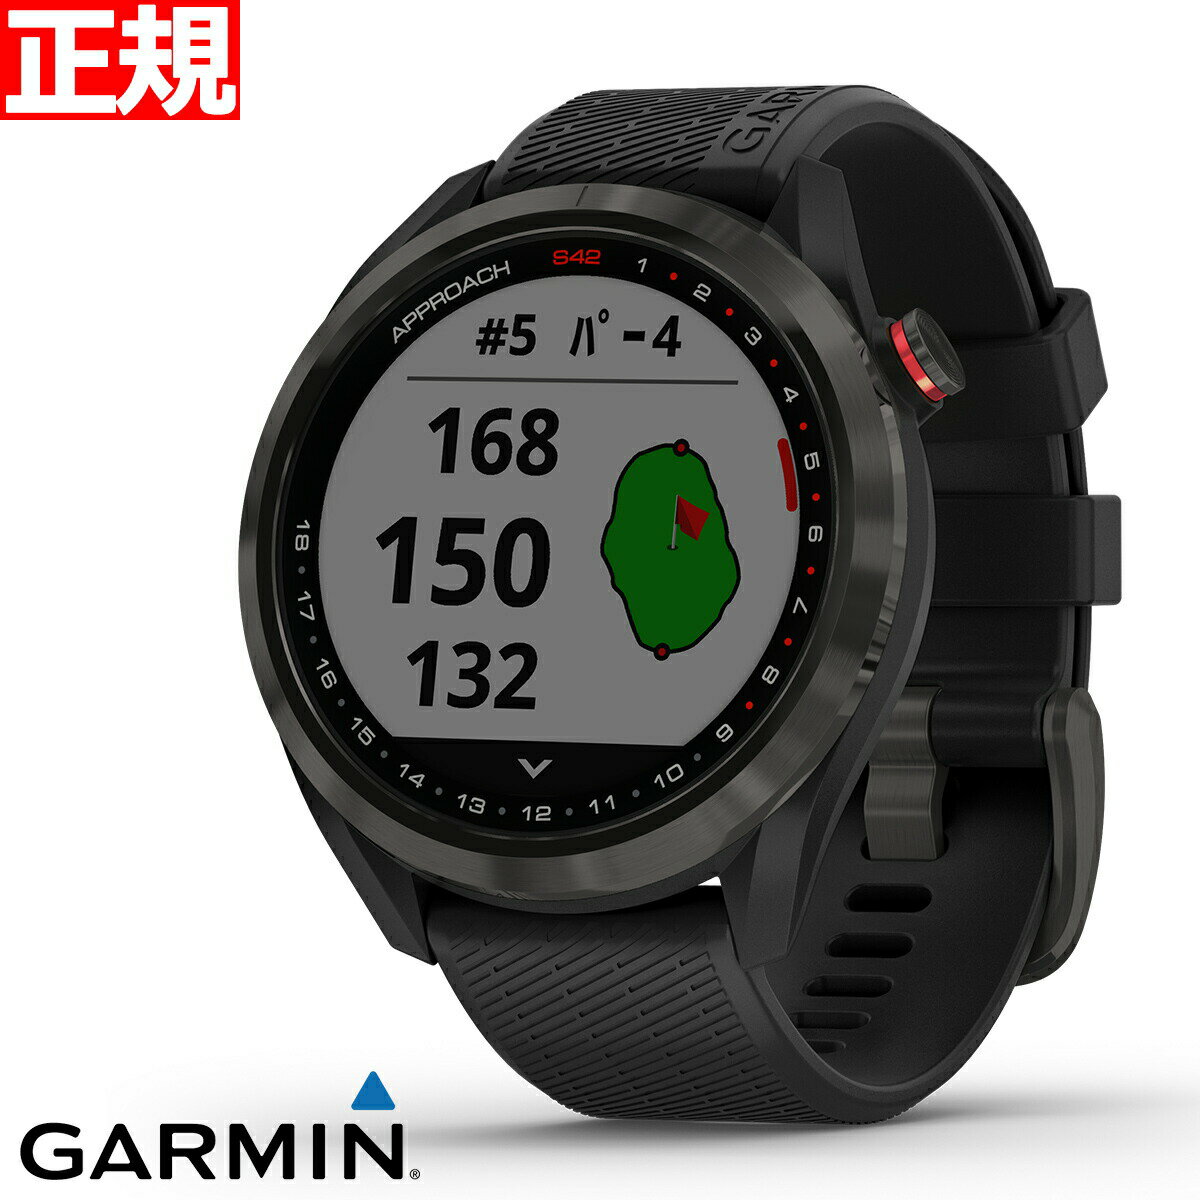 【24回分割手数料無料 】ガーミン GARMIN スマートウォッチ Approach S42 Black/Carbon Gray アプローチ S42 ブラック/カーボングレー ゴルフ GPS ウェアラブル 腕時計 010-02572-20